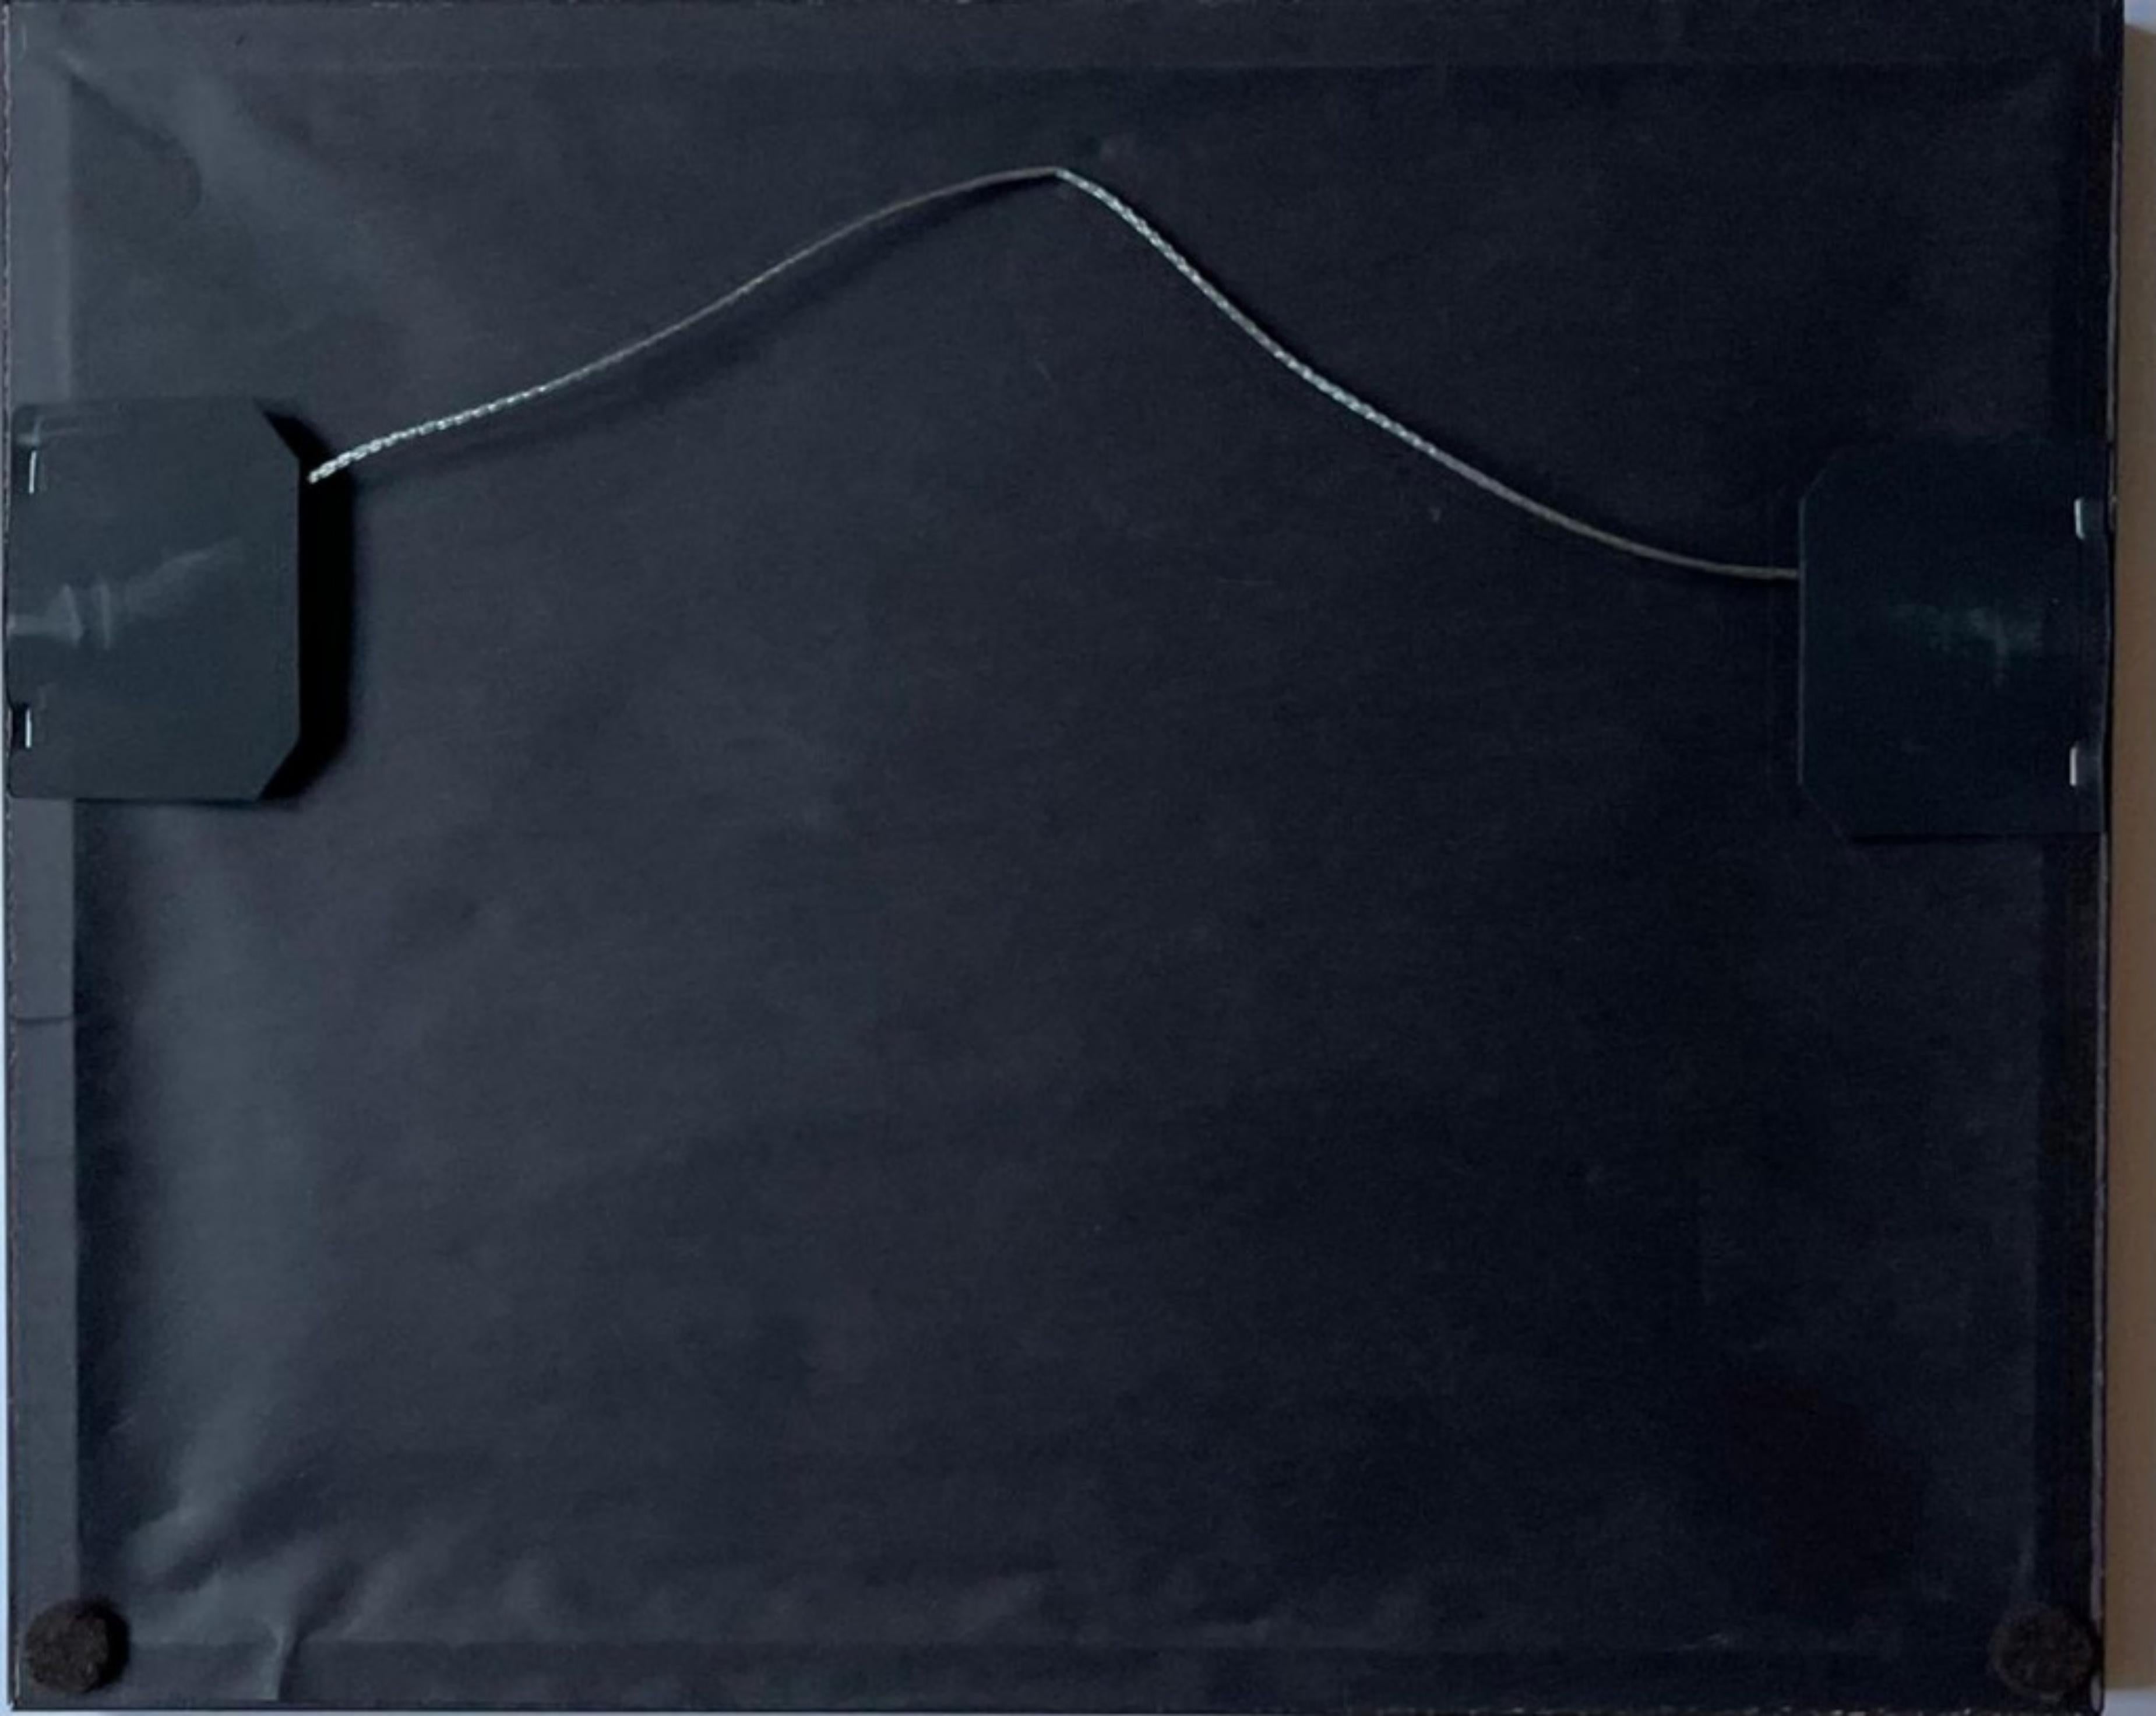 Michael Childers
Andy Warhol à New York, 1976, 2007
Tirage photographique
Signé et numéroté 8/60 au recto au feutre noir.
Cadre inclus
Ce portrait fait partie d'une série de portraits d'Andy Warhol réalisés par Michael Childers, photographe